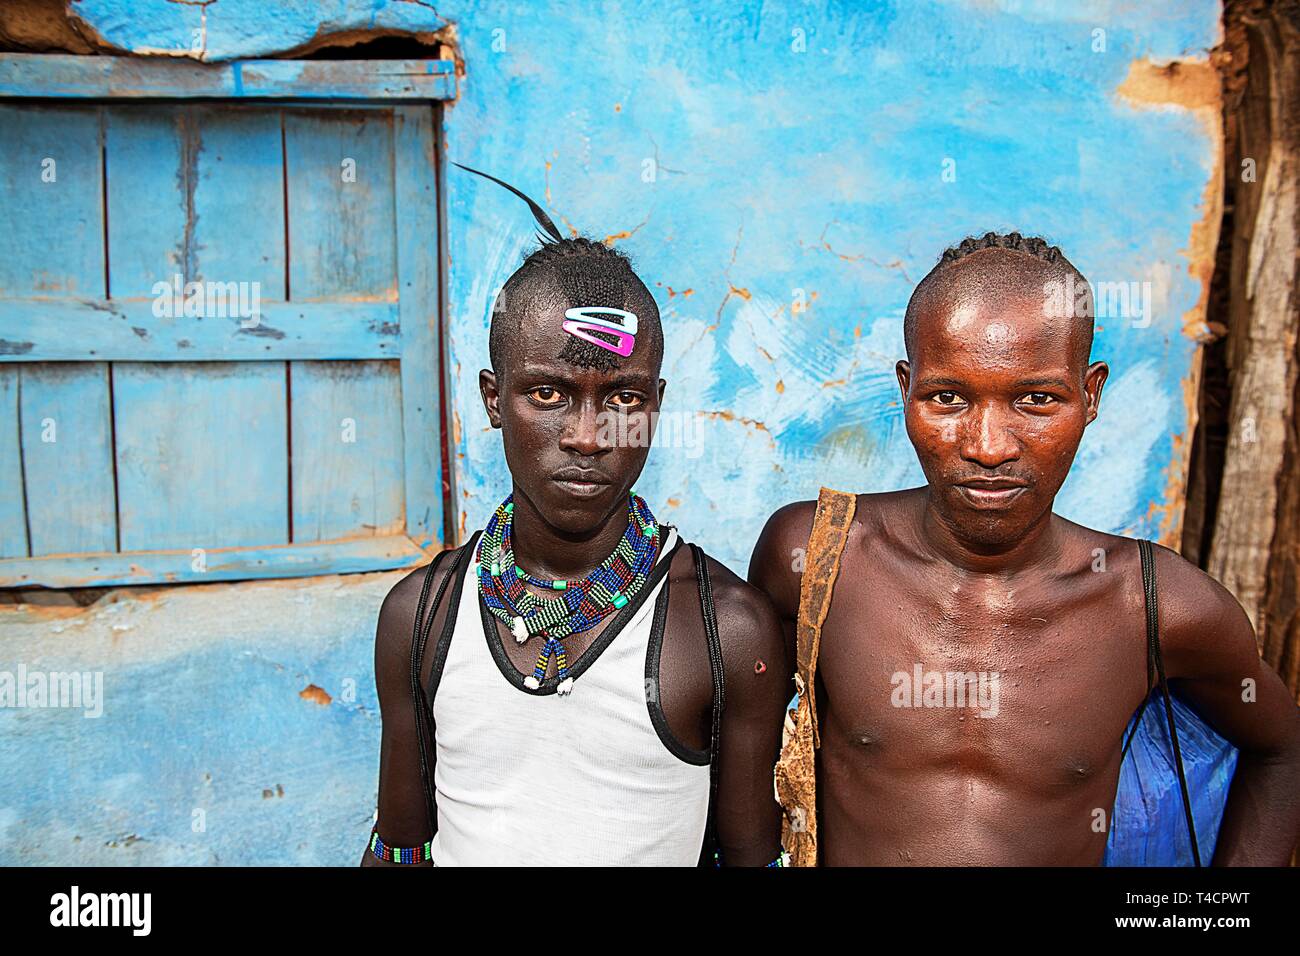 Giovani uomini della Hamer gruppo etnico con capelli colorati fermi e perla gioielli, Dimeka, bassa valle dell'Omo, regione dell'Omo, sud Etiopia, Etiopia Foto Stock